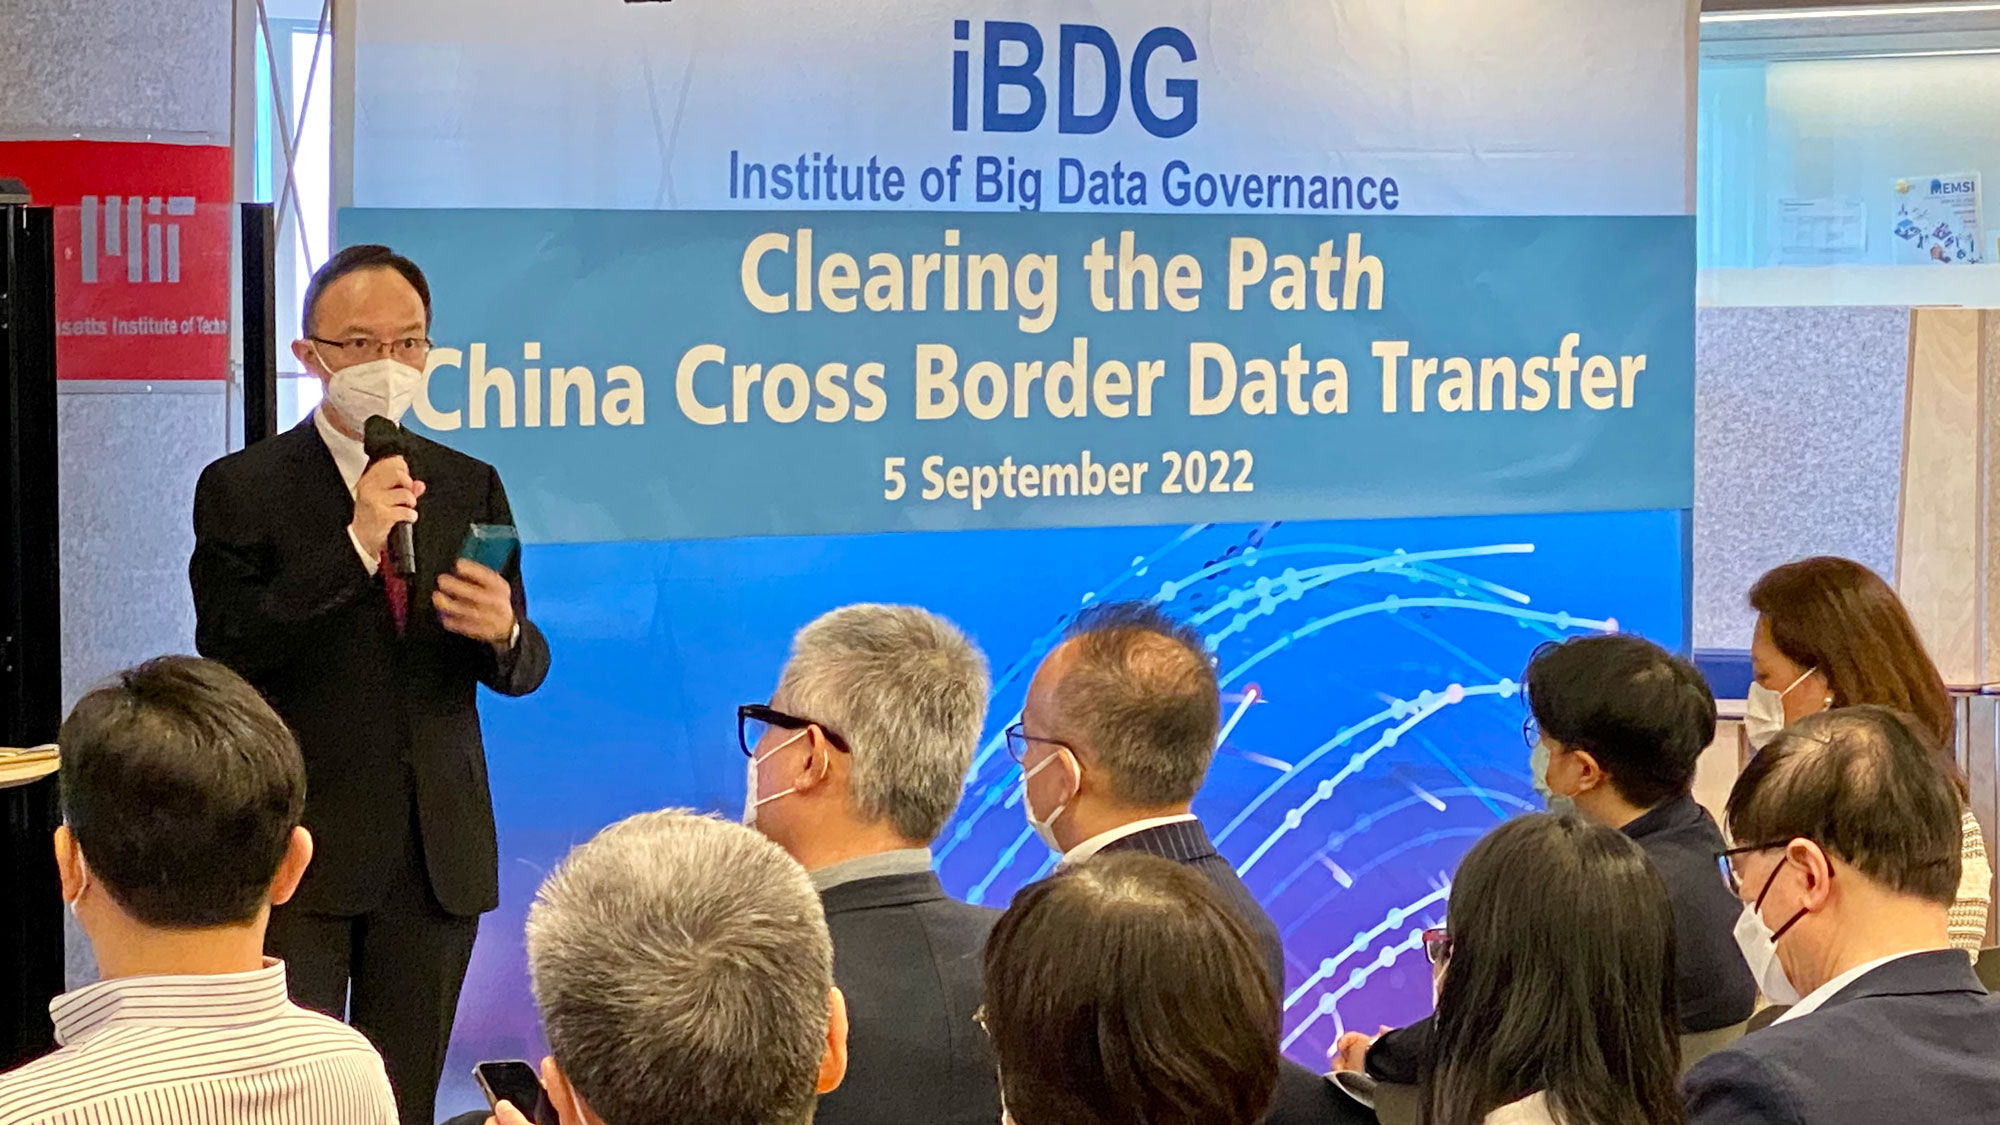 政府資訊科技總監林偉喬先生於「iBDG Seminar: Clearing the Path China Cross Border Data Transfer」致辭。